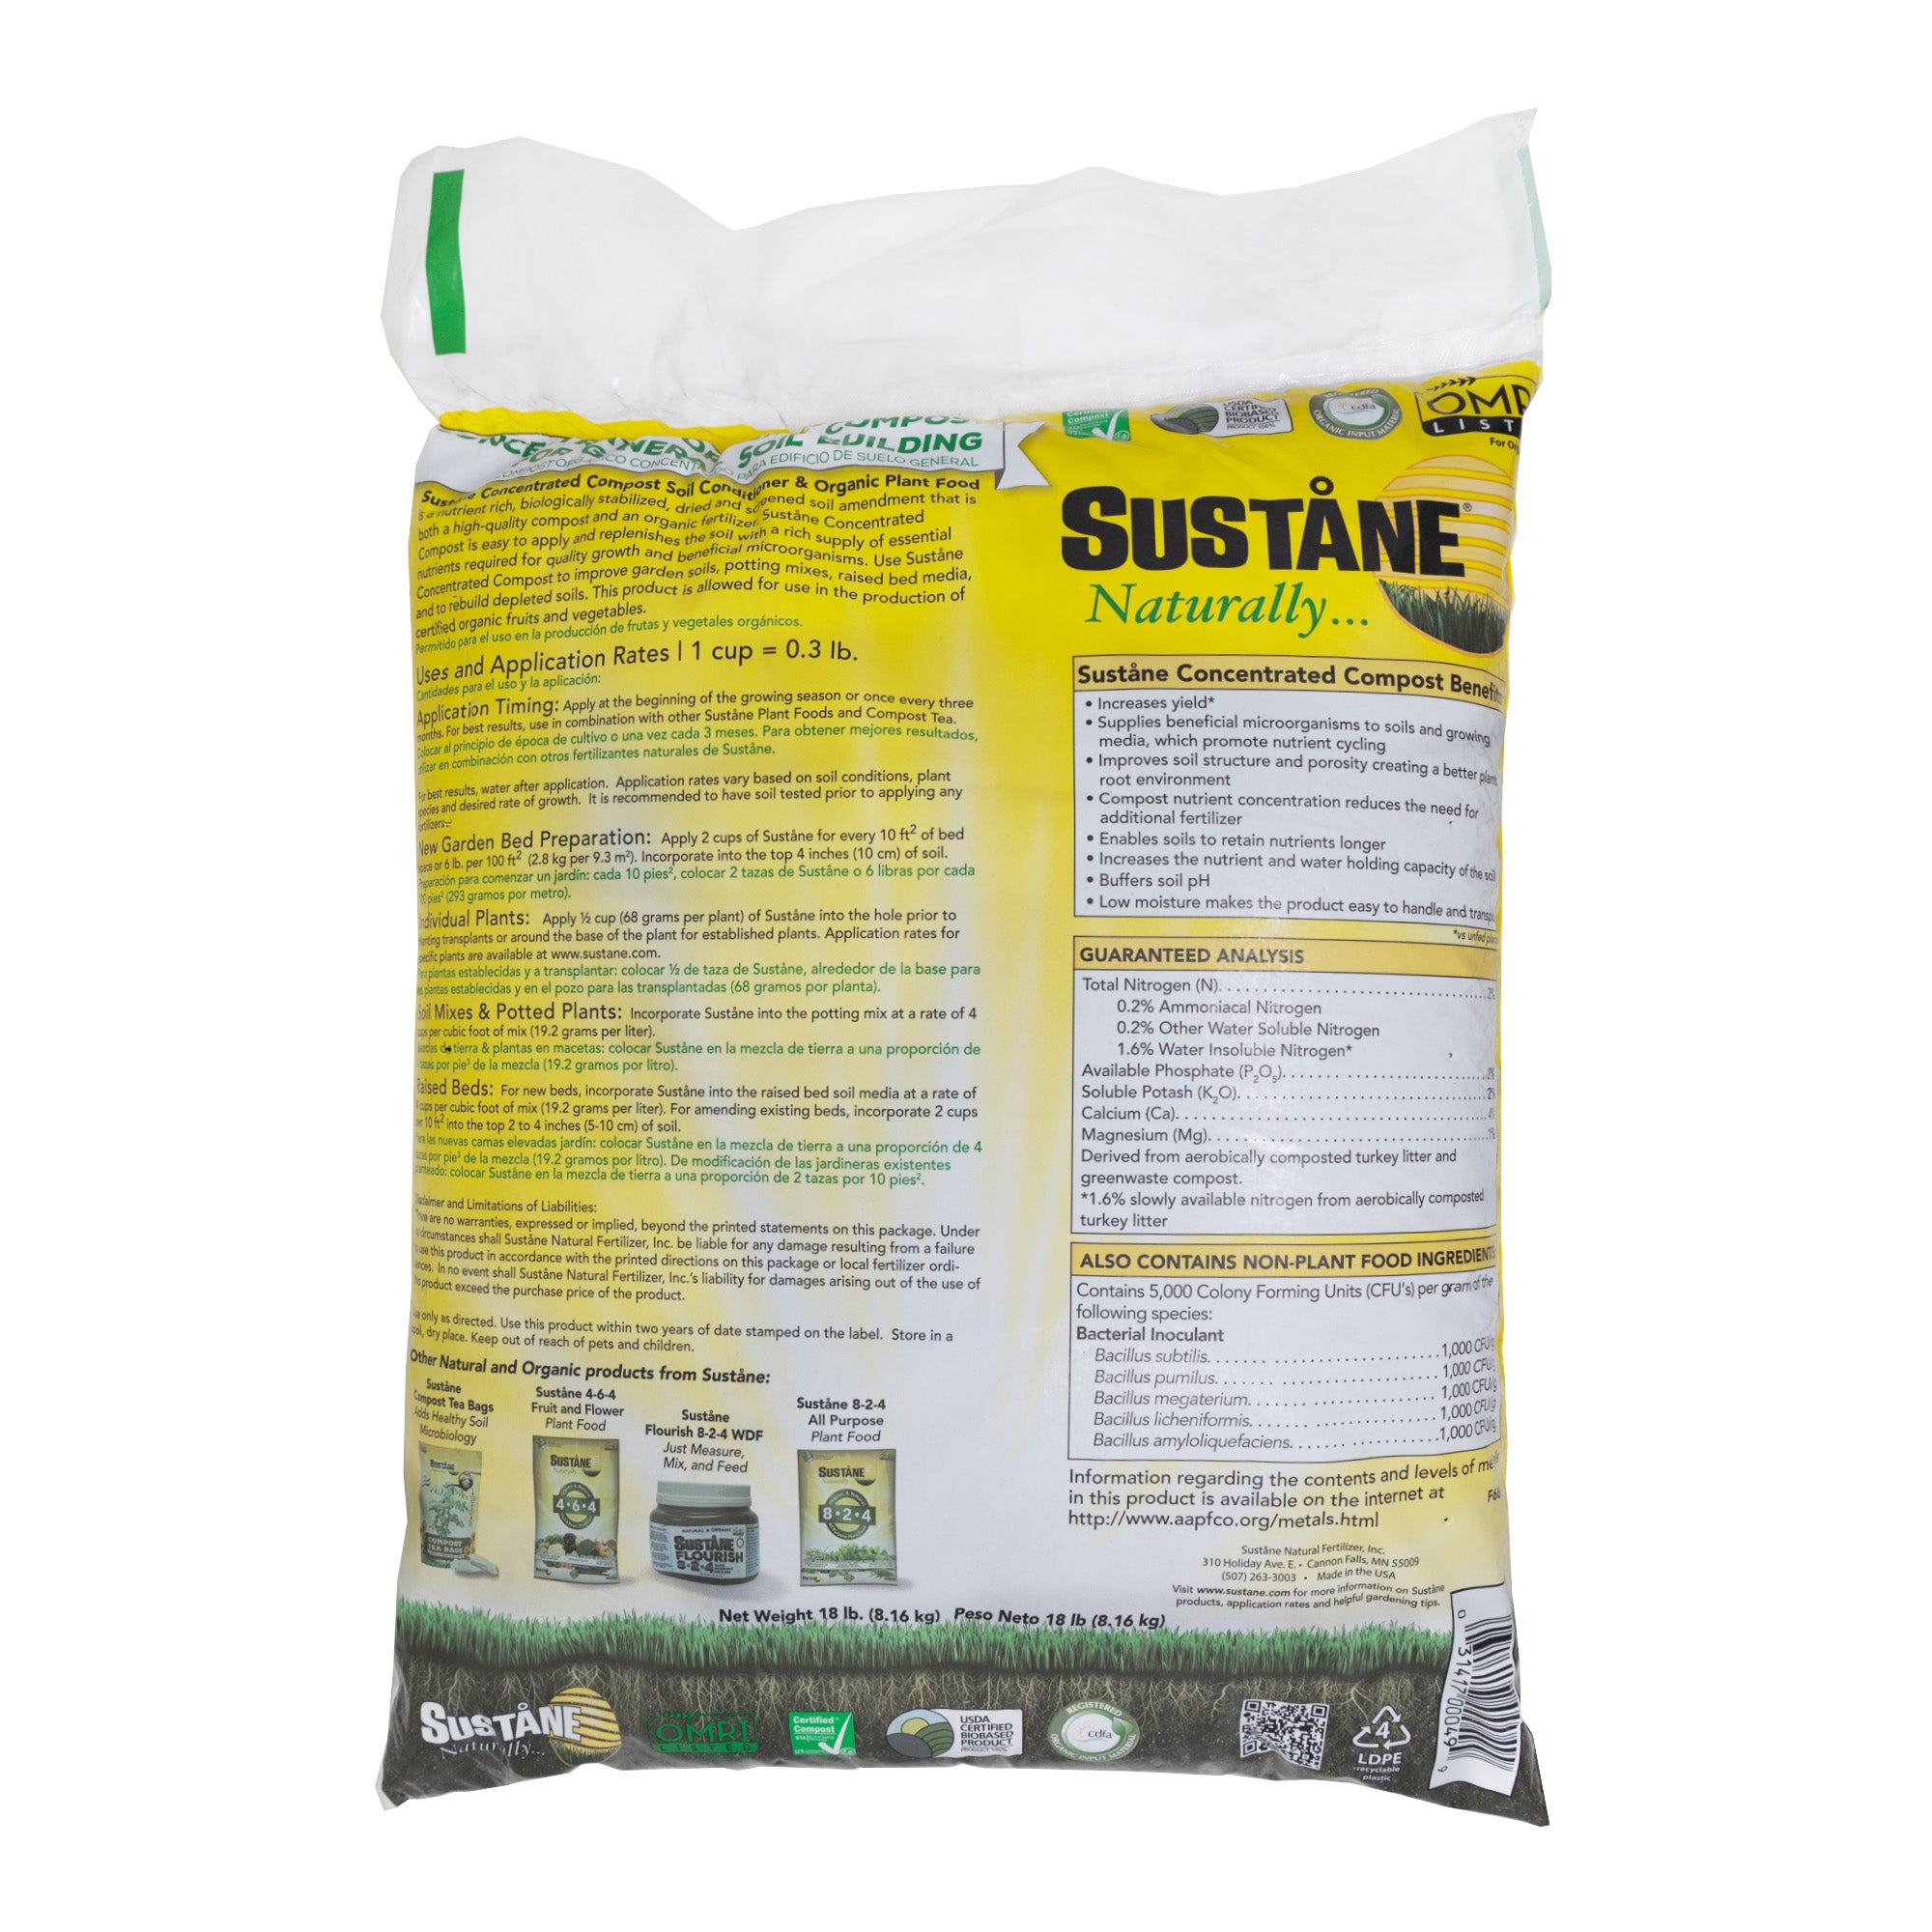 Sustane Natural Fertilizer Organic Compost, 0.5 cu ft, 18lbs